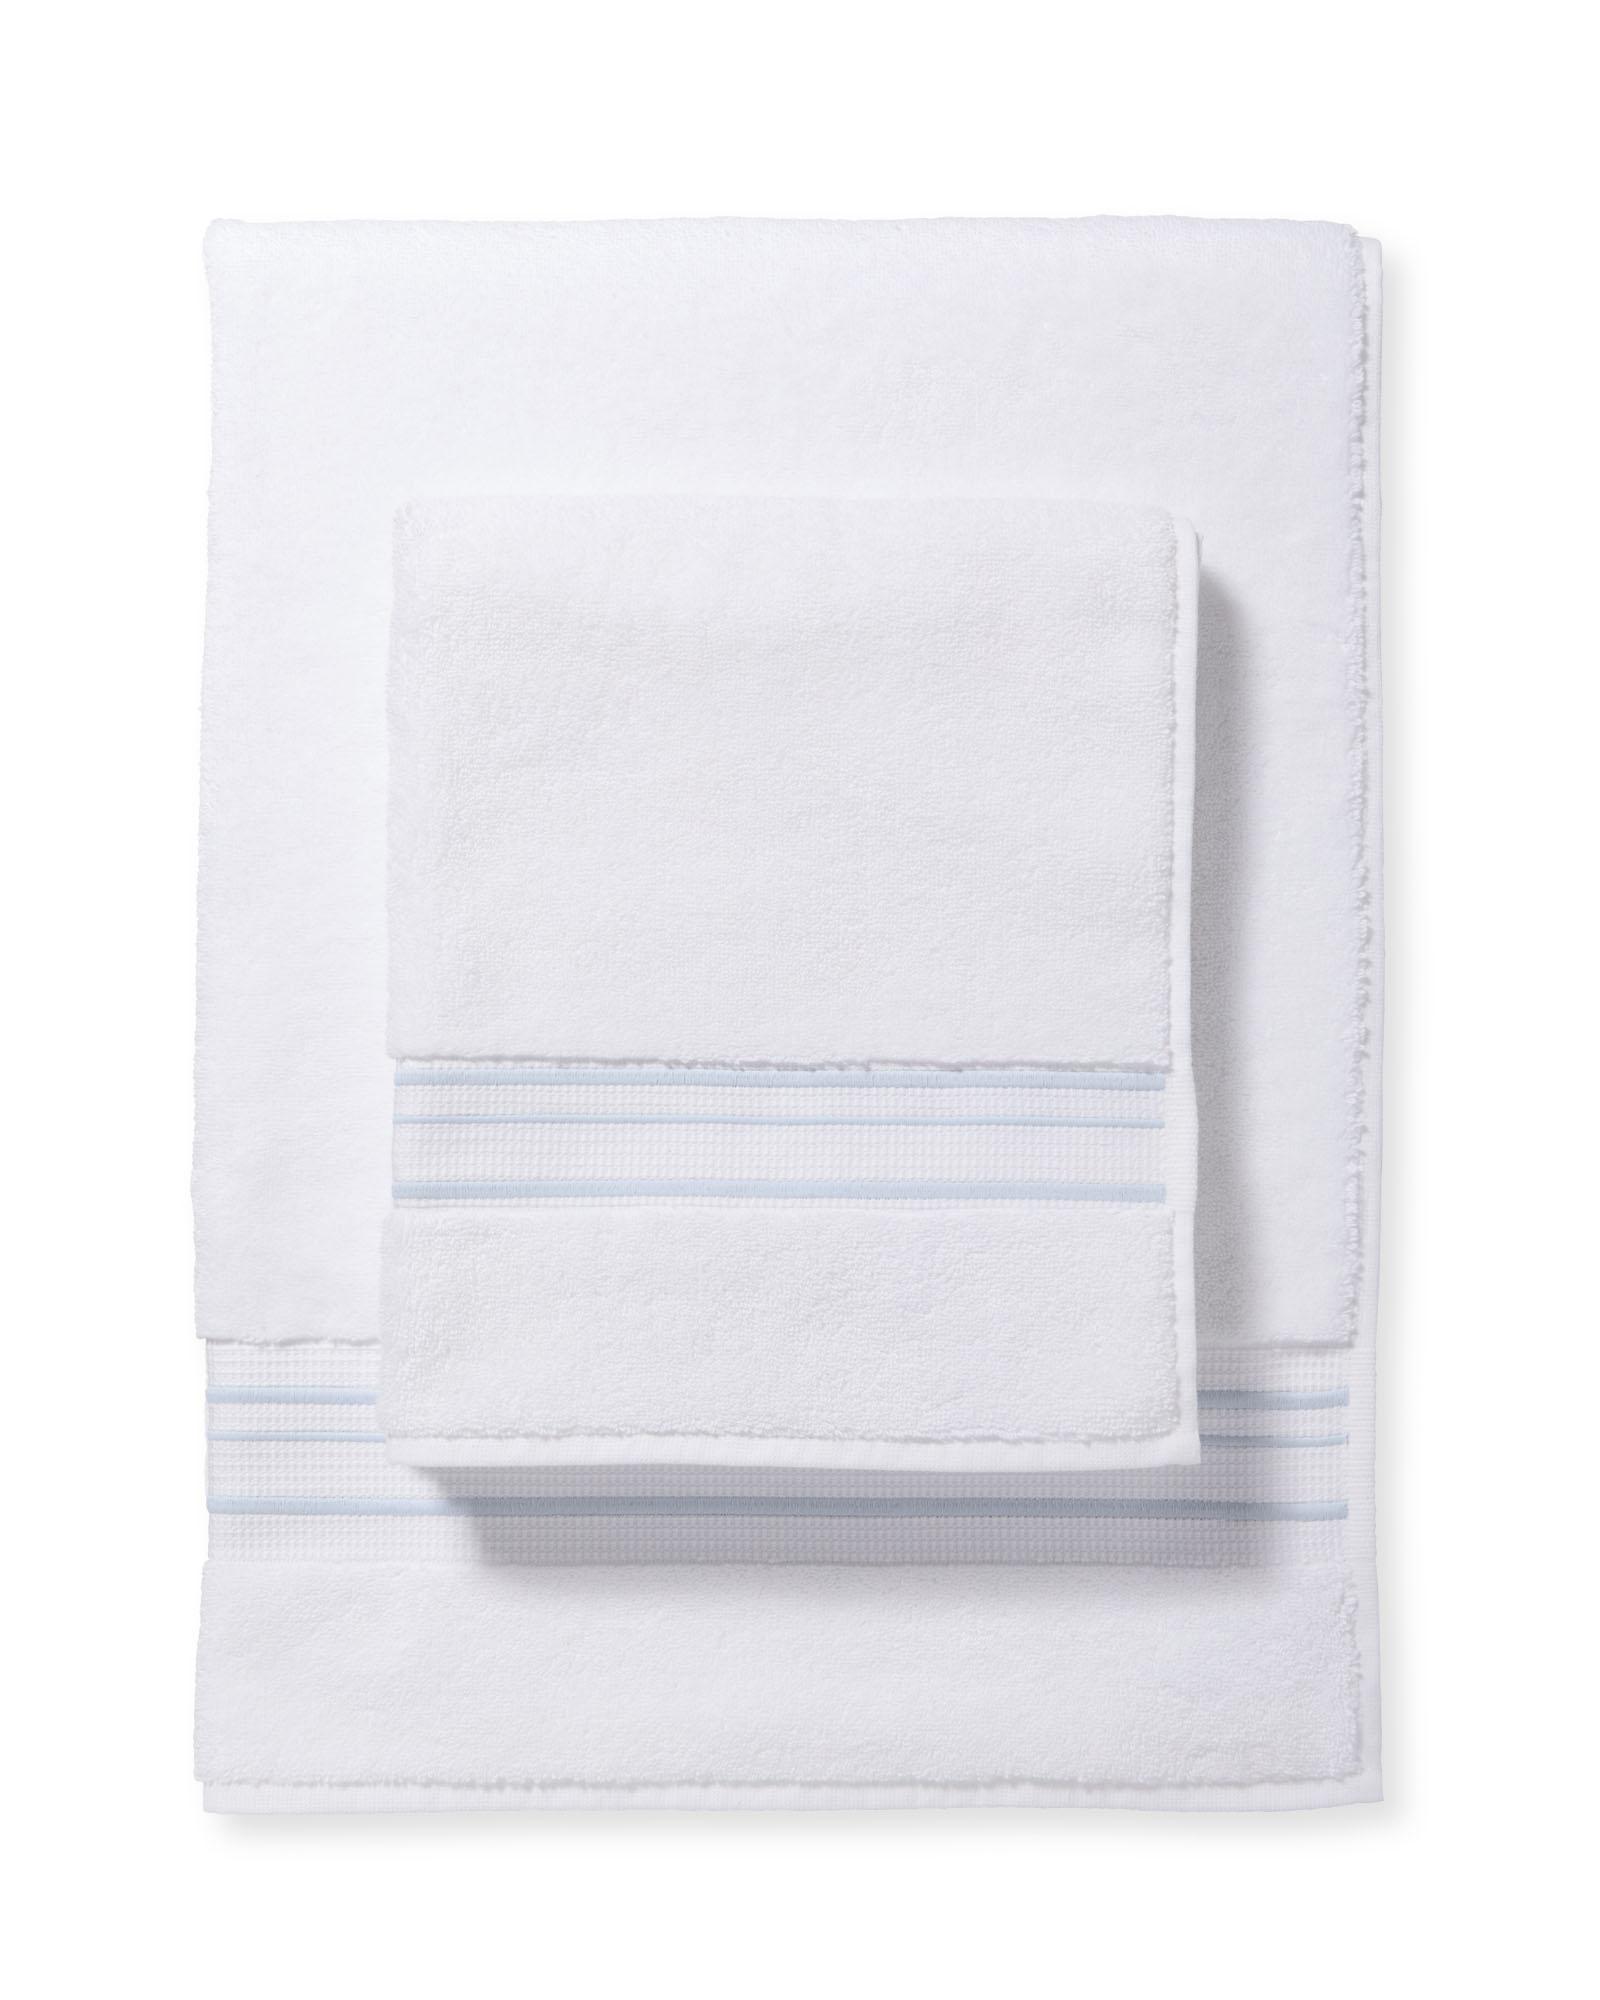 Soho Living Towels